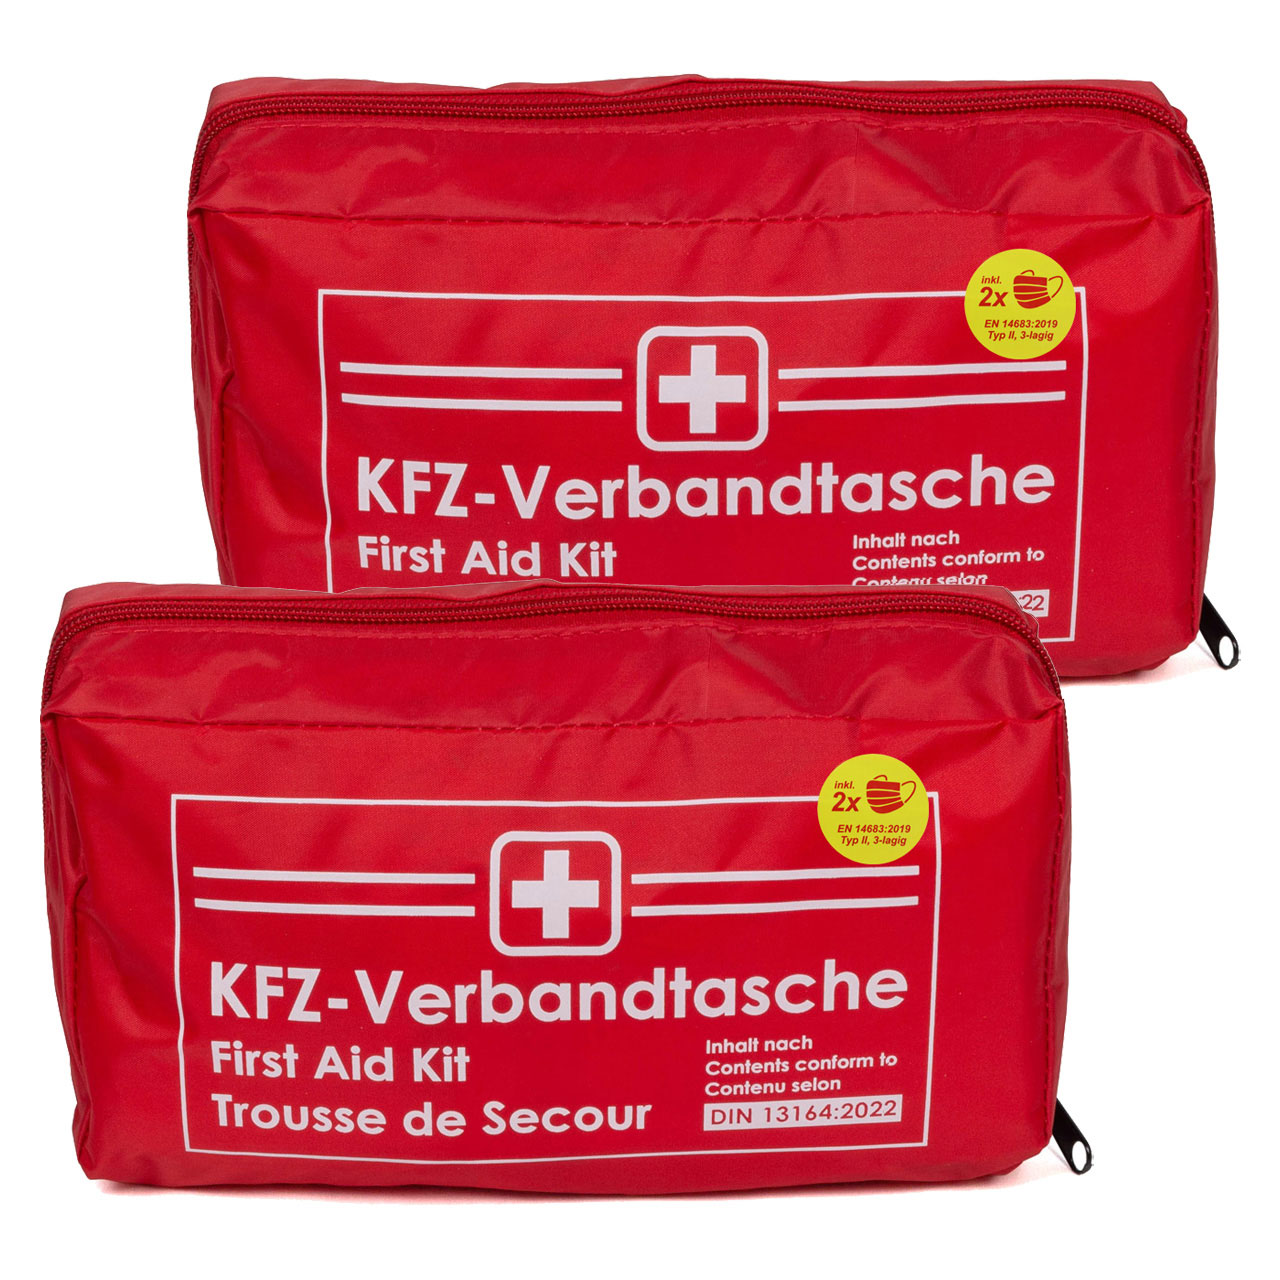 2x AUTO PKW Verbandtasche Verbandkasten Erste-Hilfe DIN13164-2022 (MHD 08.2028)